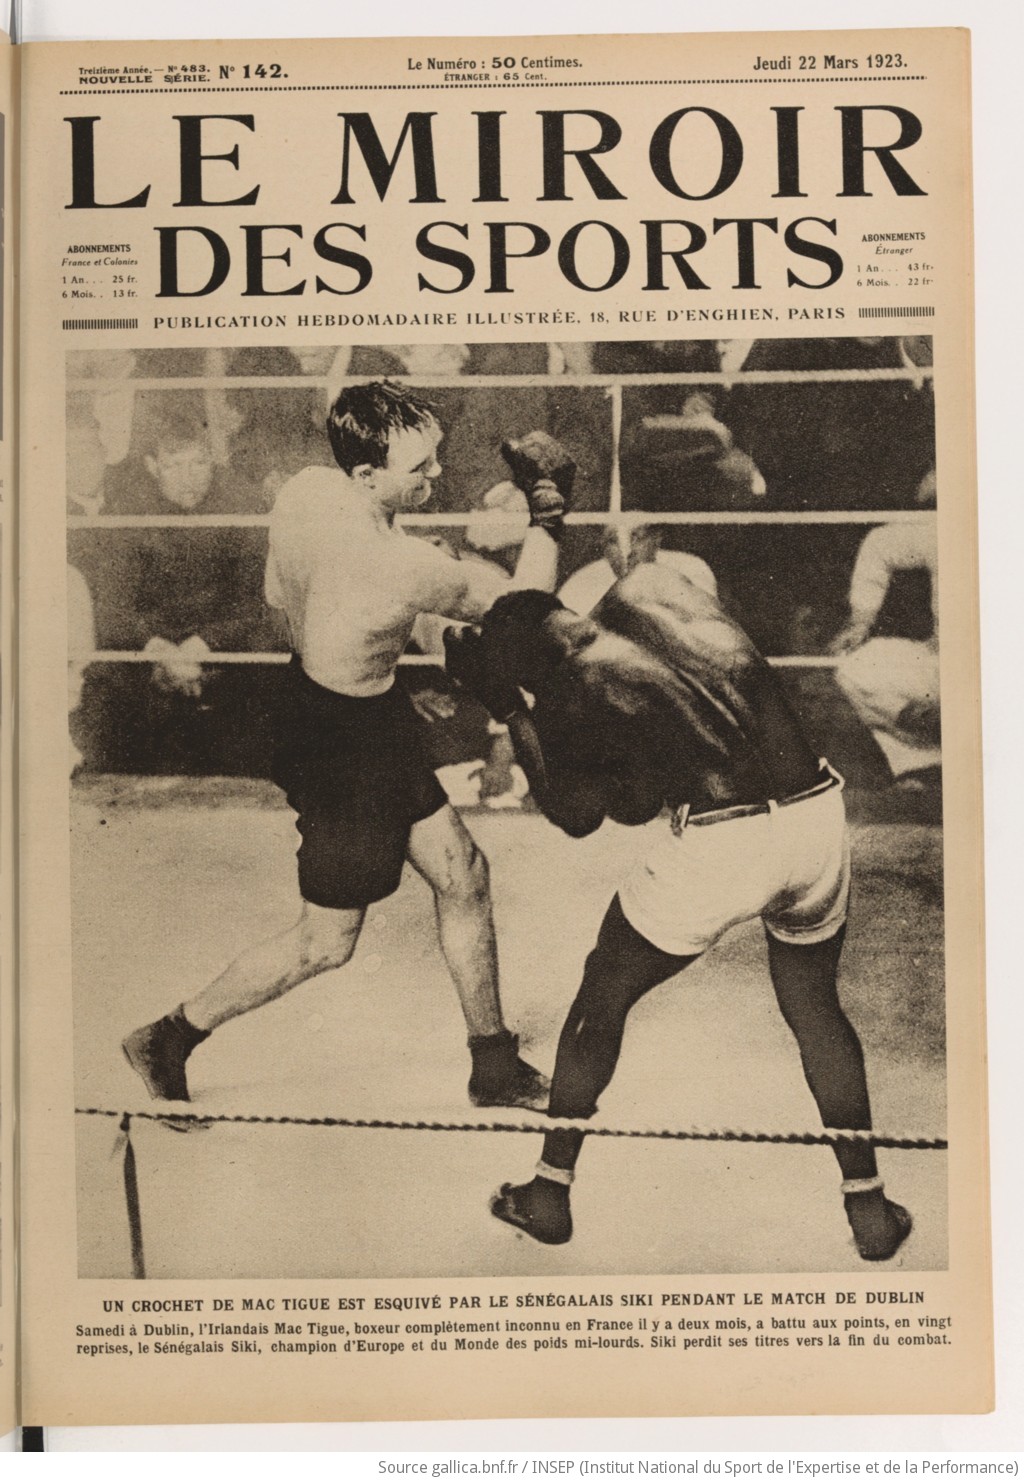 Le Miroir des sports : publication hebdomadaire illustrée - View 1 - Page 177